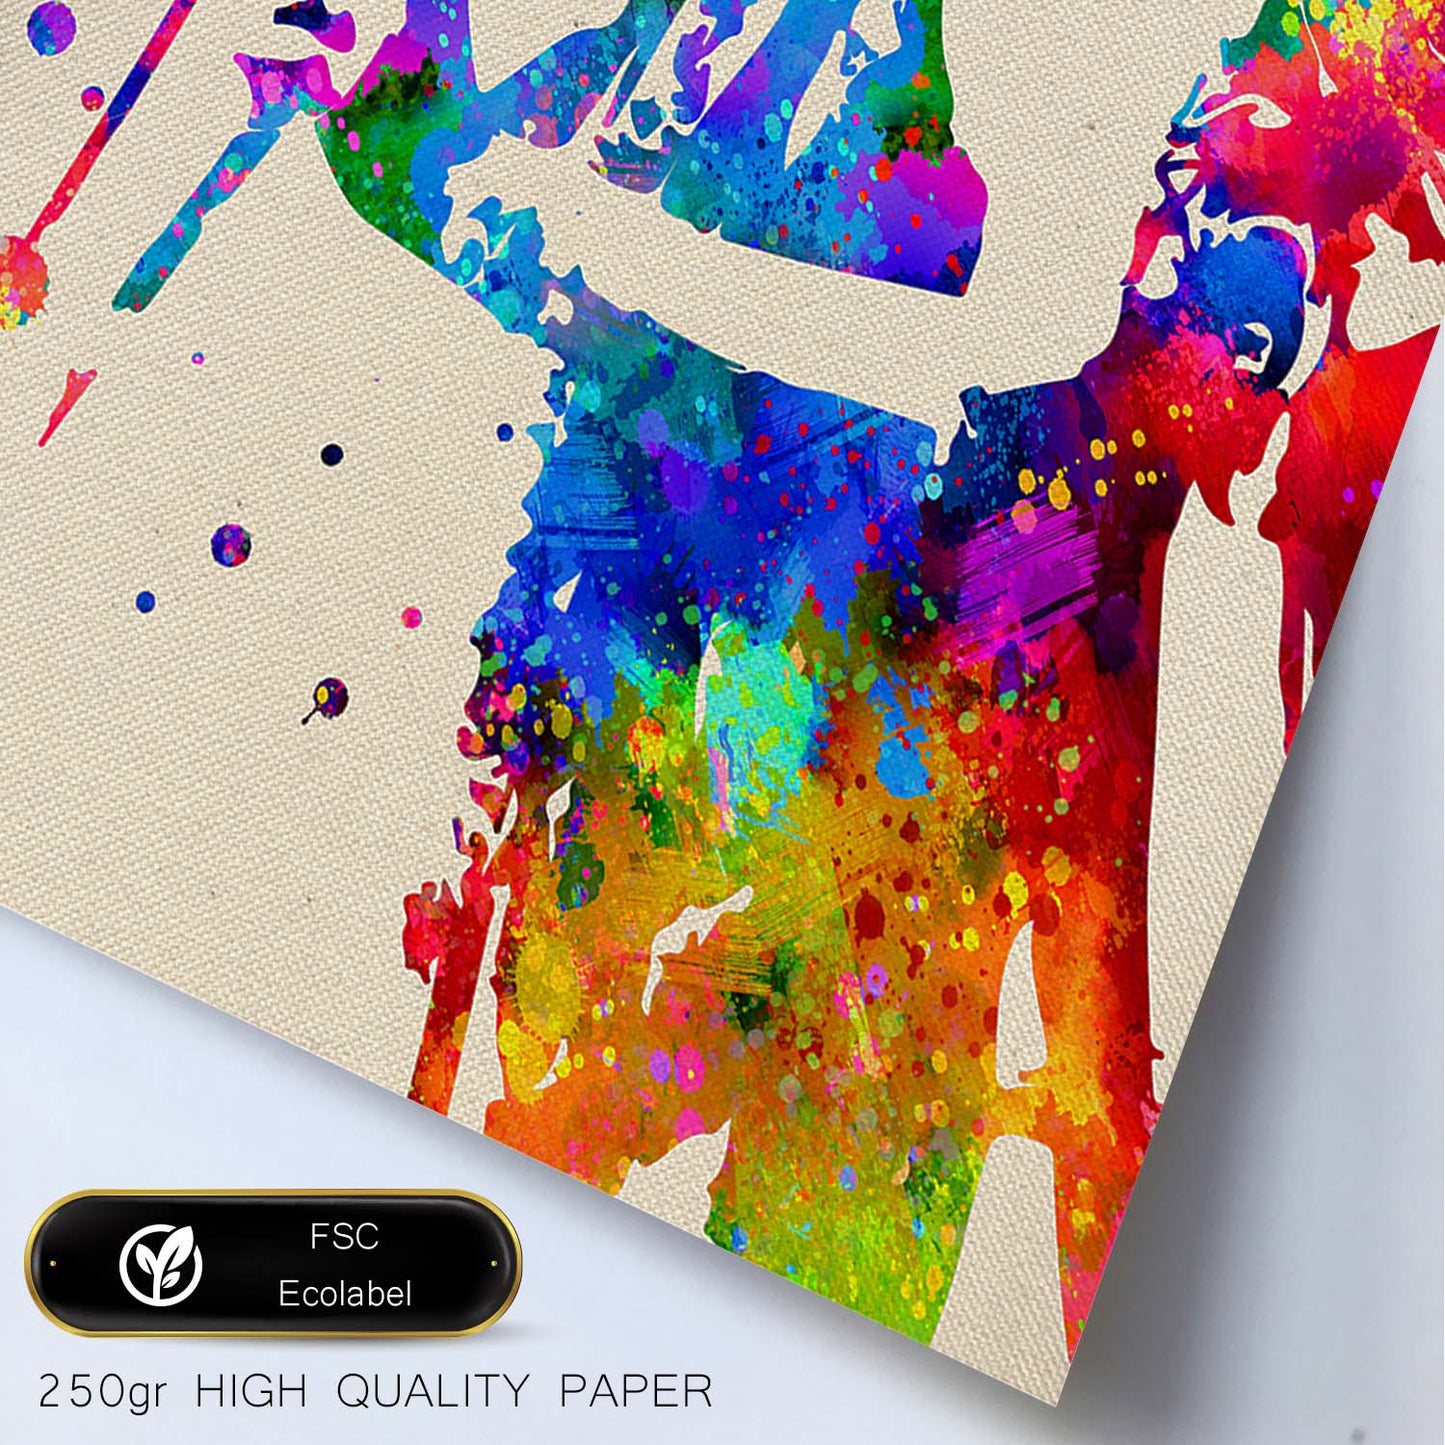 Poster imagen de Janis Joplin. Posters con diseño acuarela de famosos, actores, músicos-Artwork-Nacnic-Nacnic Estudio SL